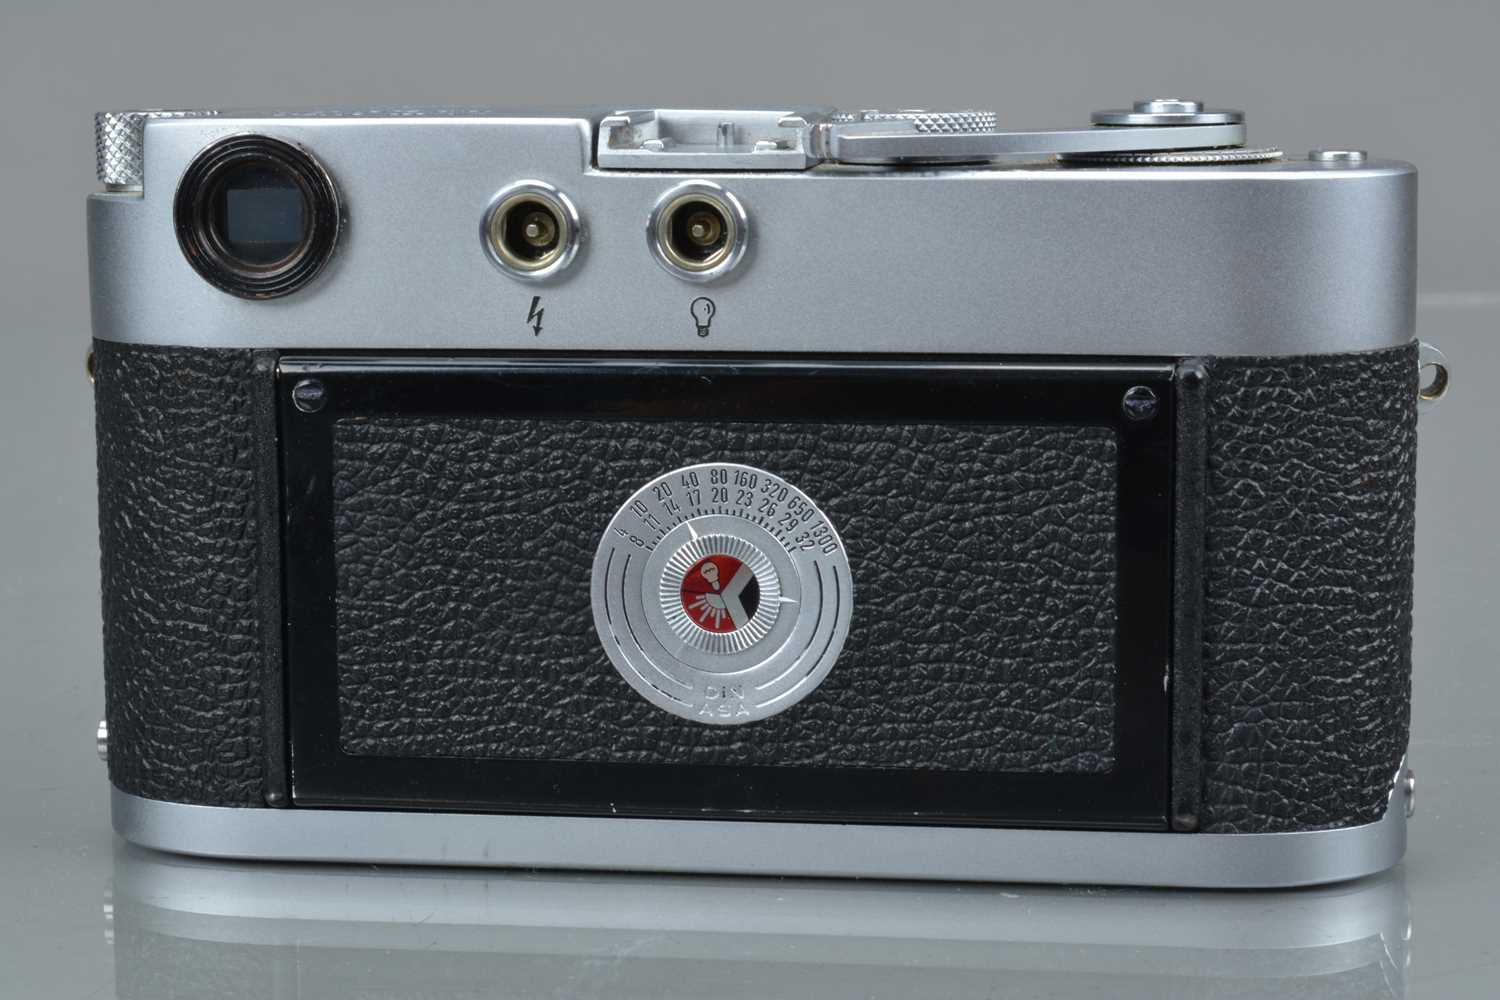 A Leitz Wetzlar Leica M2 Rangefinder Camera, - Image 2 of 3